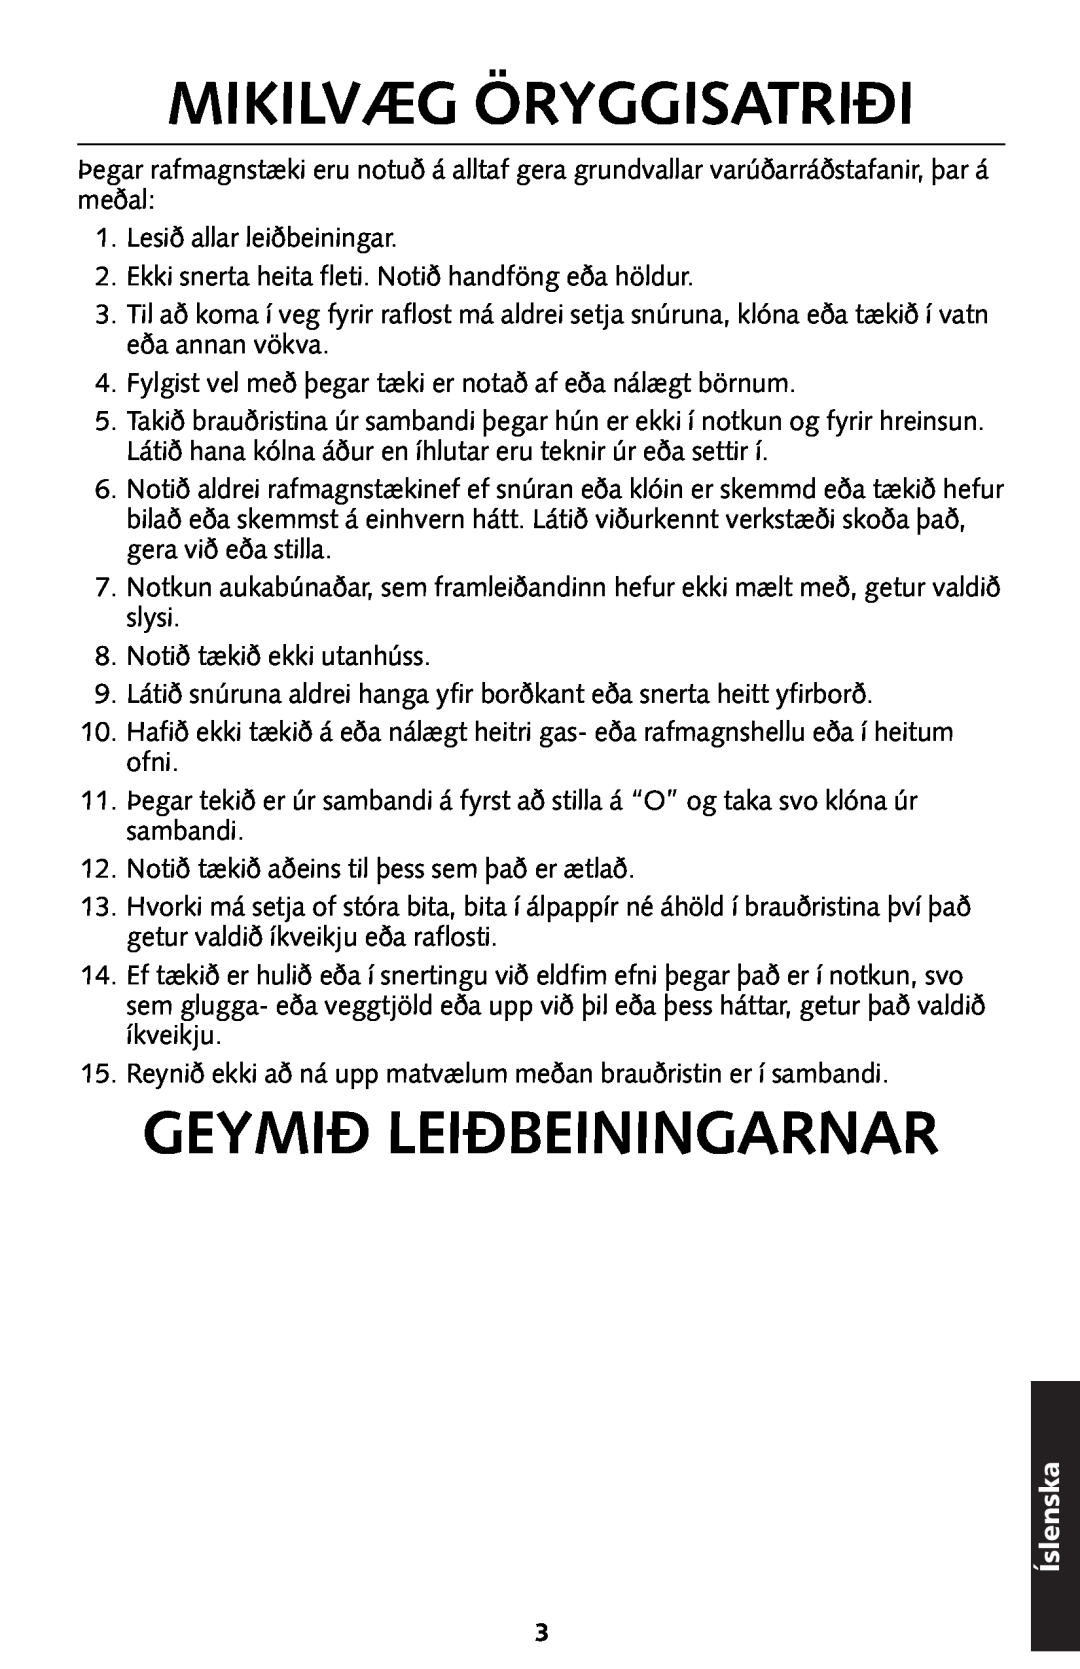 KitchenAid 5KTT890 manual Mikilvæg Öryggisatriði, Geymið Leiðbeiningarnar, Íslenska 